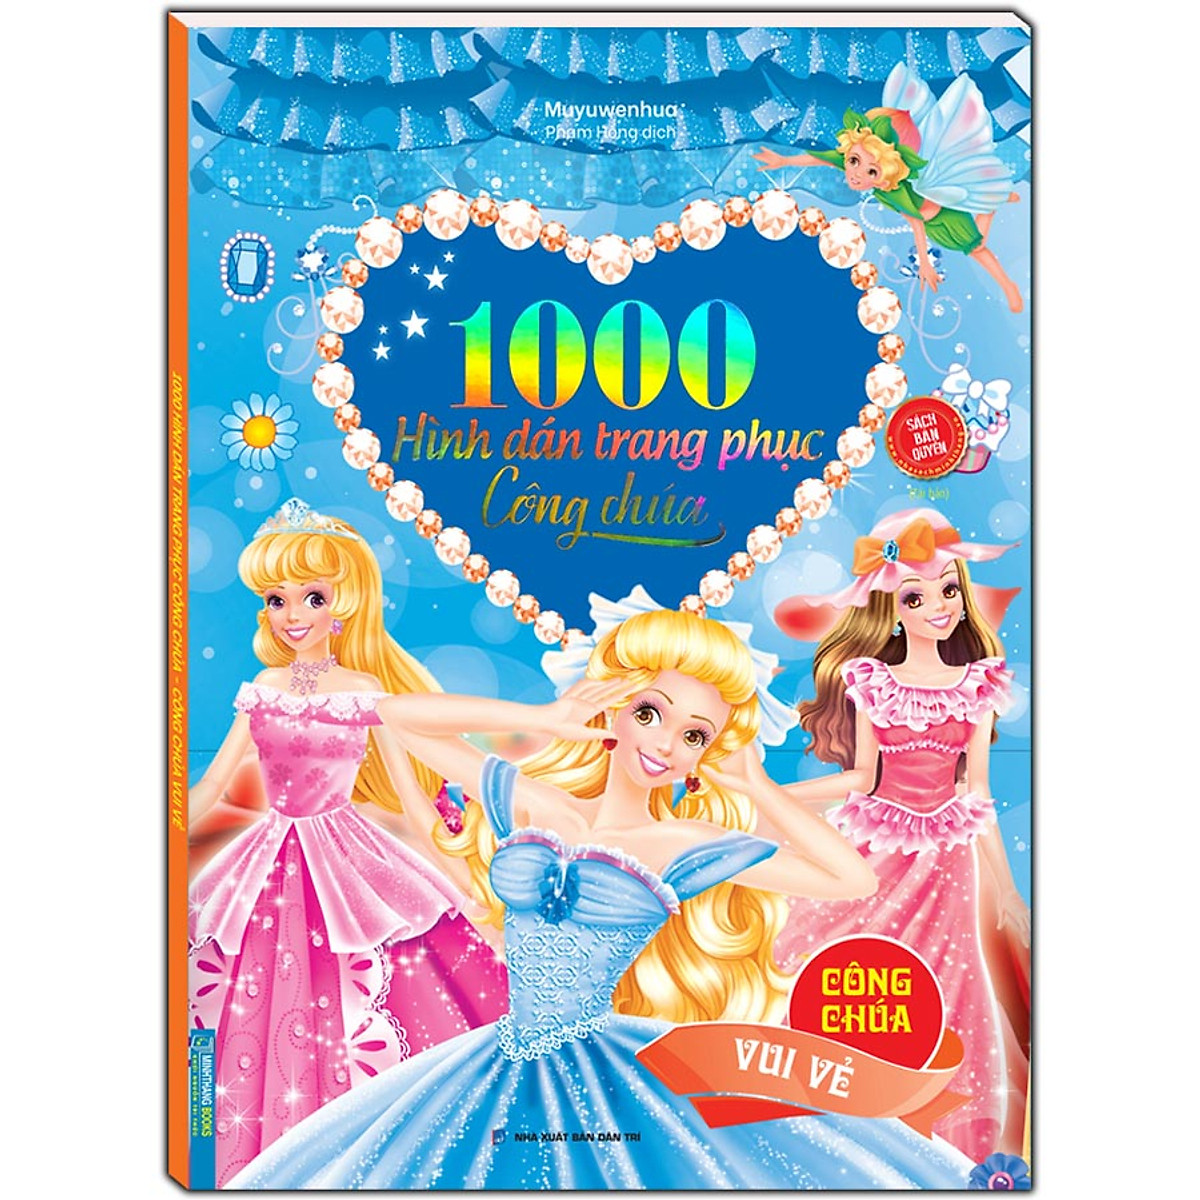 1000 hình dán trang phục công chúa - Công chúa vui vẻ (sách bản ...